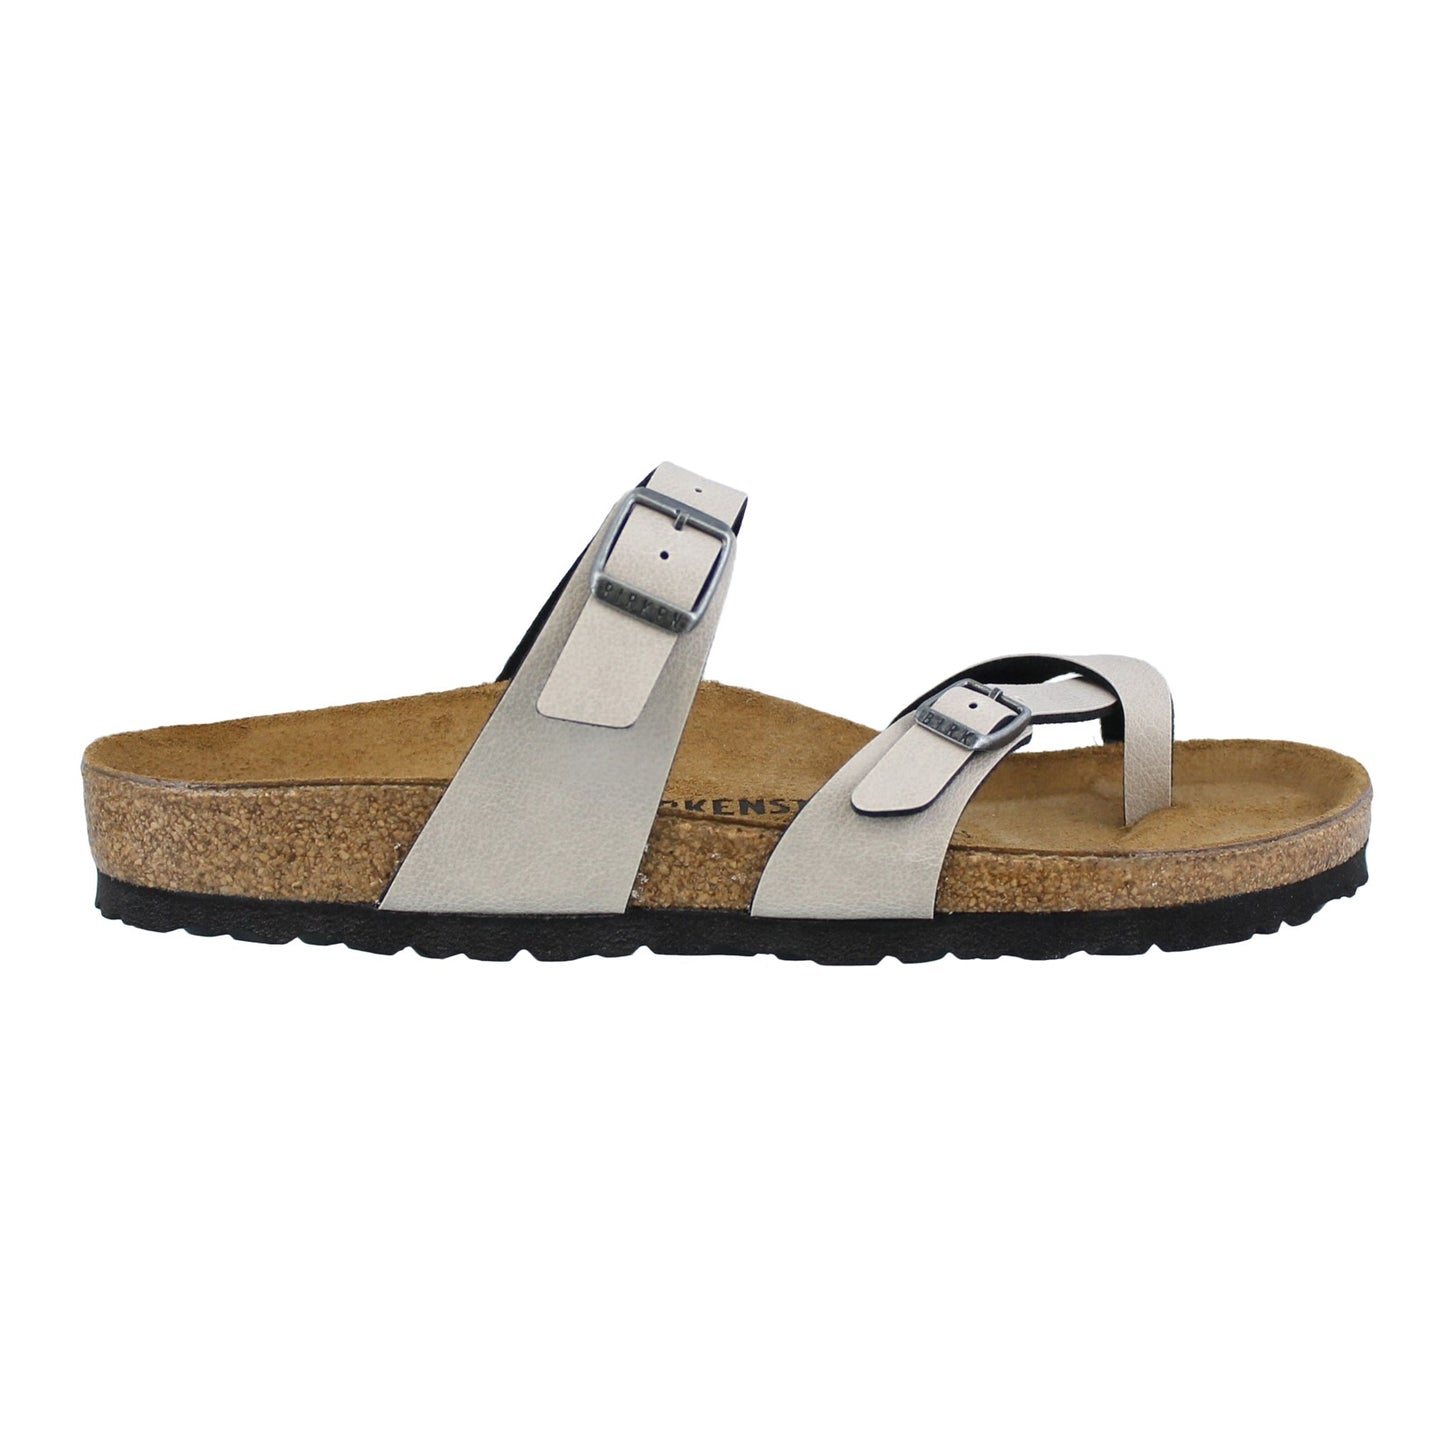 Peltz Shoes  Women's Birkenstock Mayari Sandal - Narrow Width STONE 1005 056 R